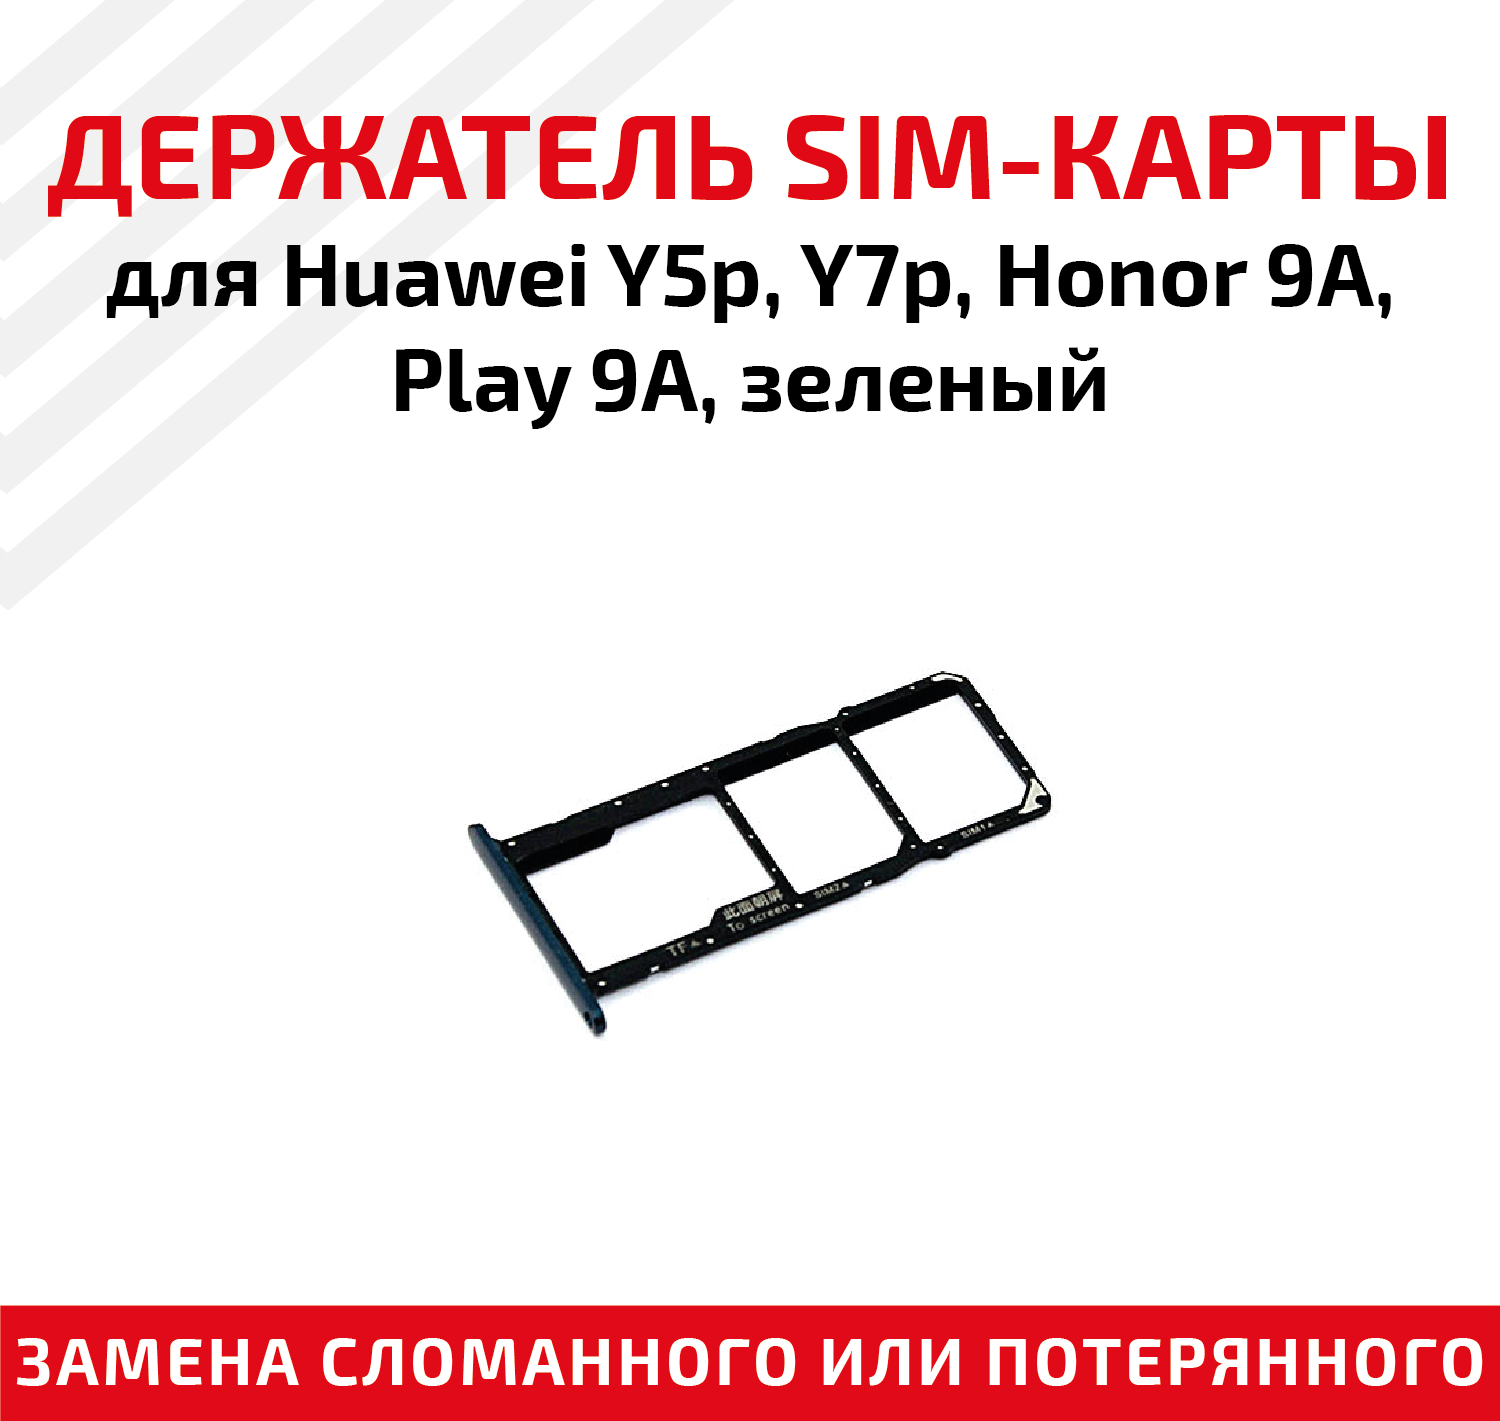 Лоток (держатель, контейнер, слот) SIM-карты для мобильного телефона (смартфона) Huawei Y5p, Y7p, Honor 9A, Play 9A, зеленый